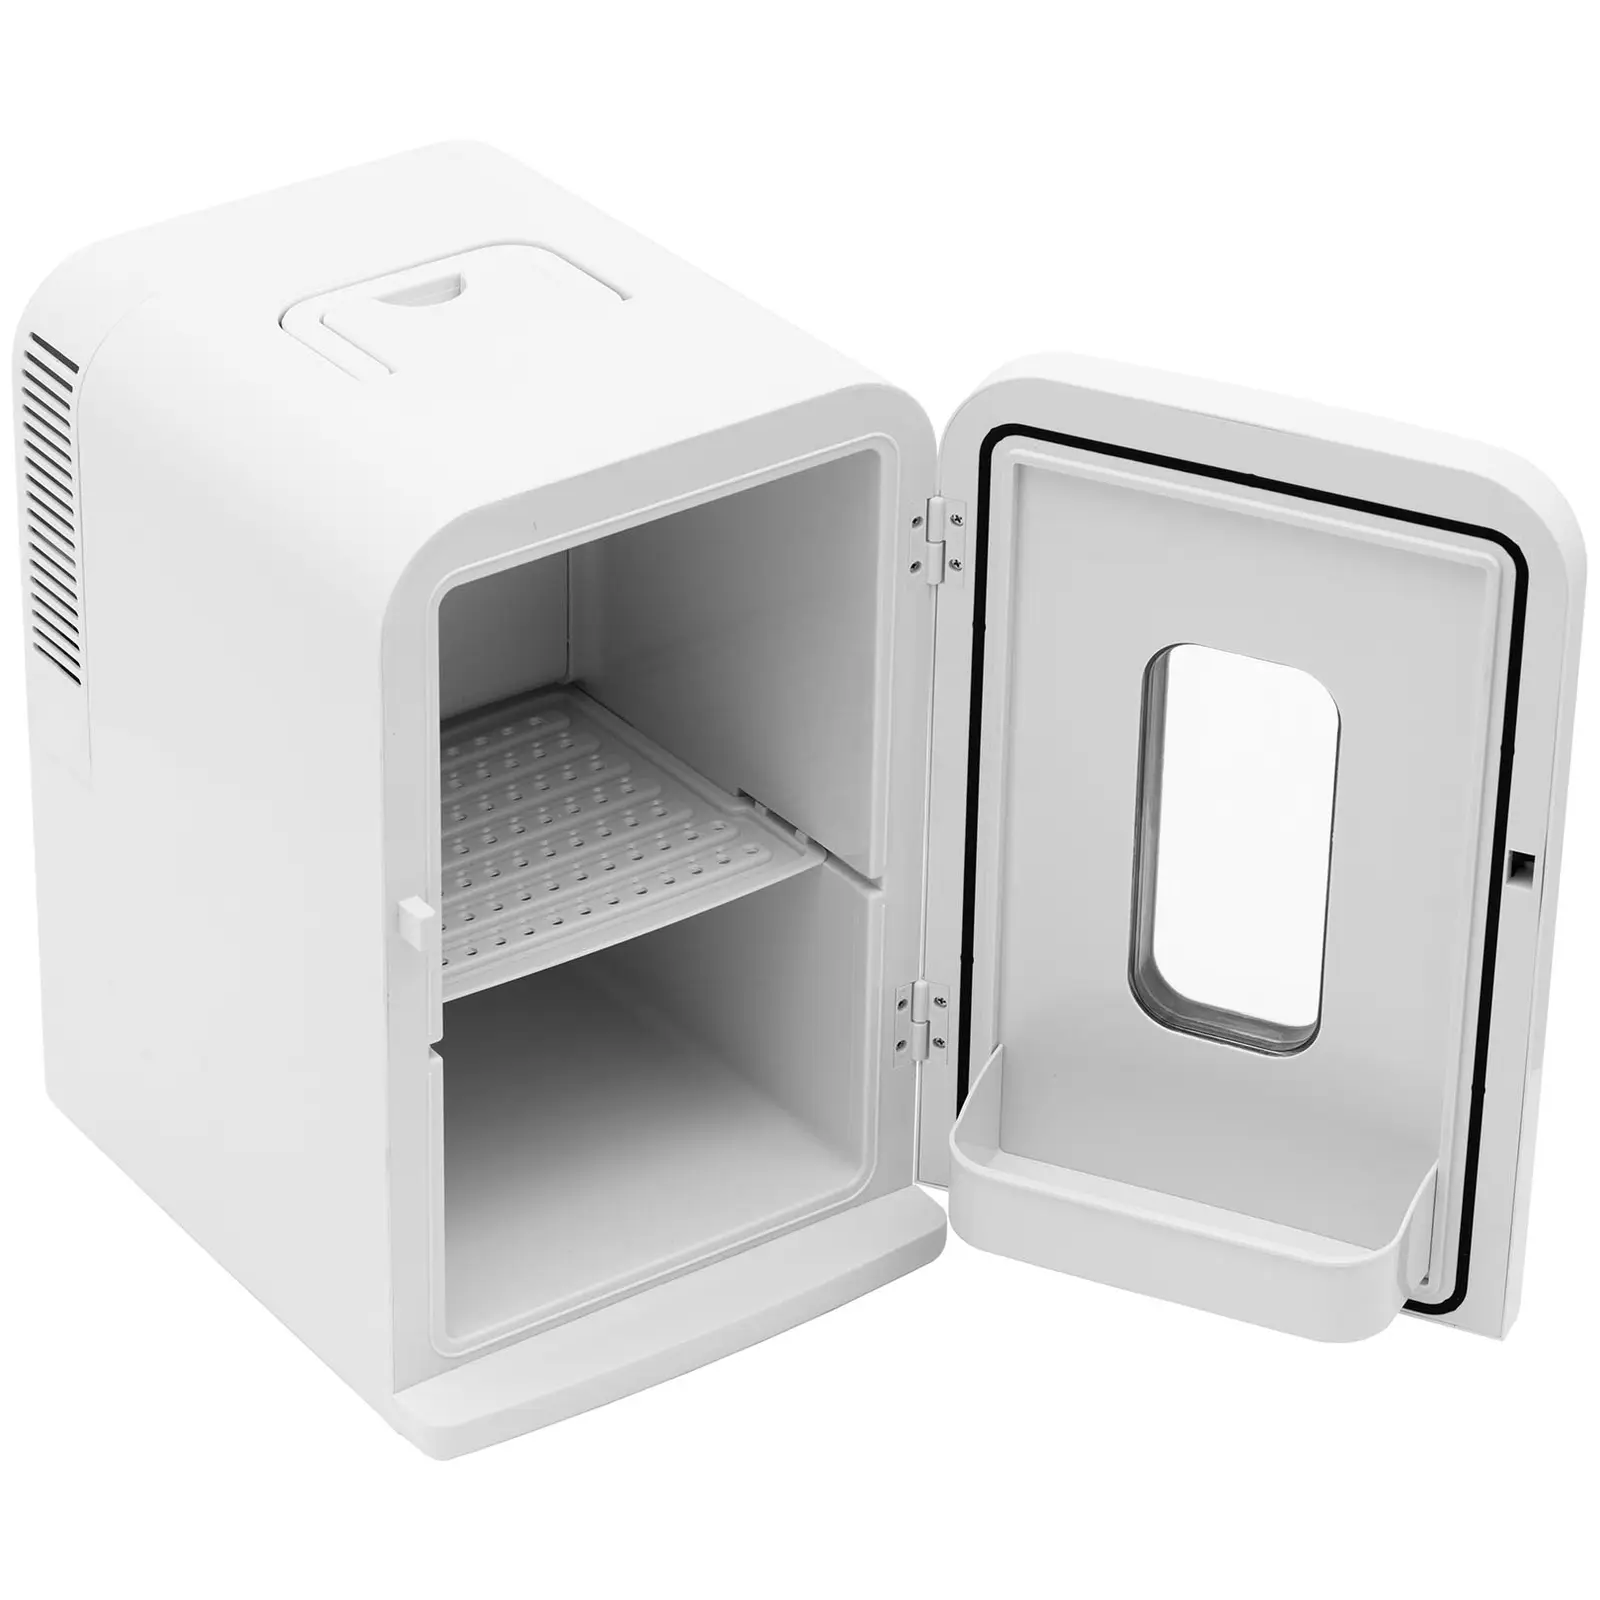 Мини хладилник 12 V / 230 V - уред 2 в 1 с функция за поддържане на топлината - 15 L - Бял